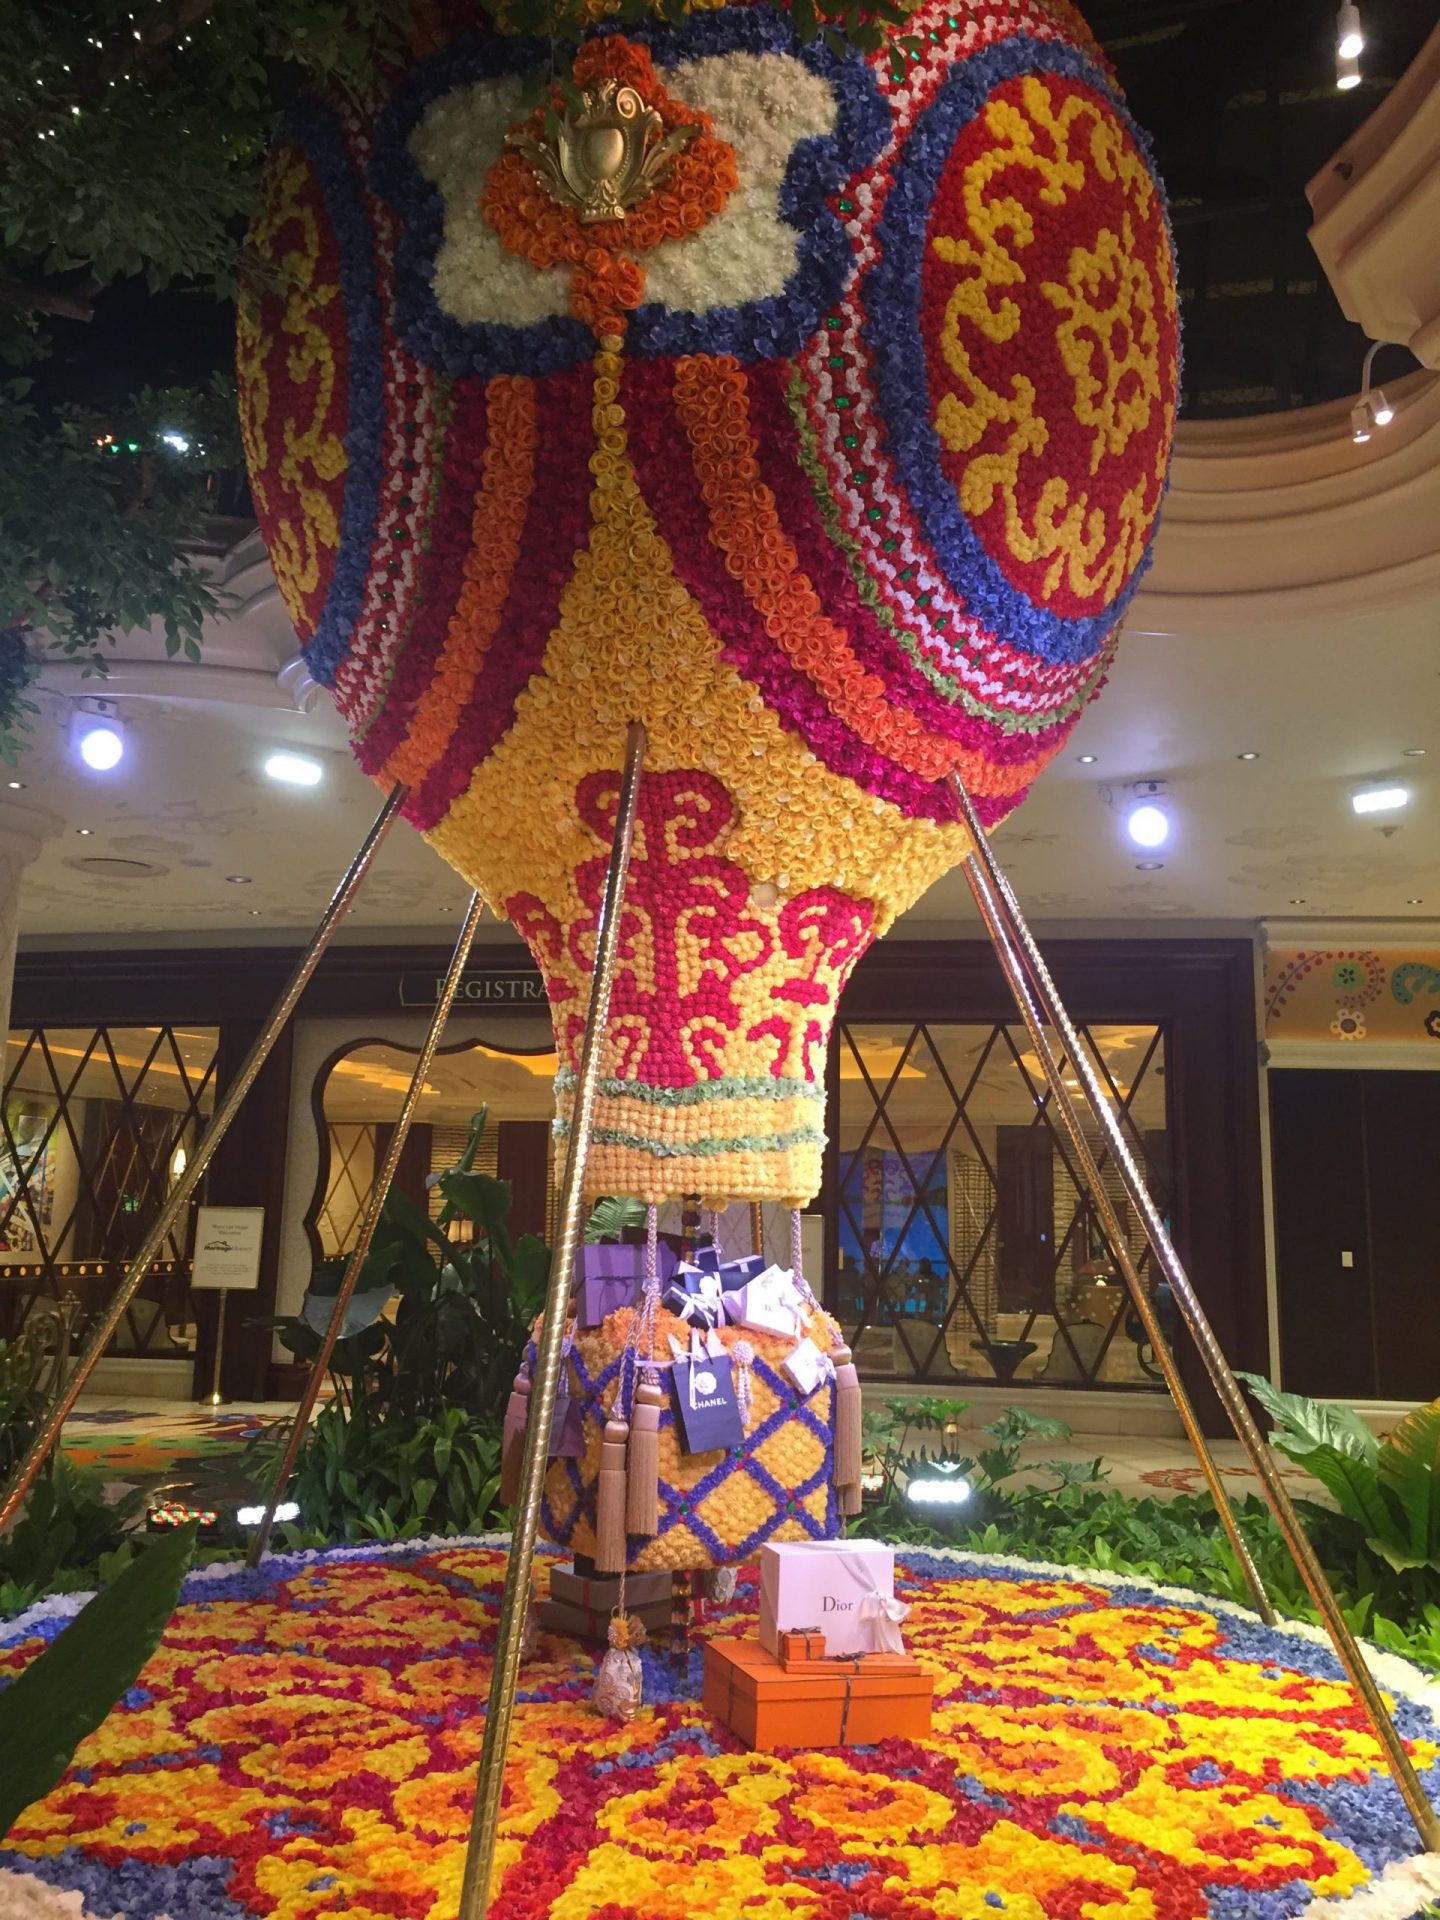 Floral hot air balloon at the Wynn, Las Vegas